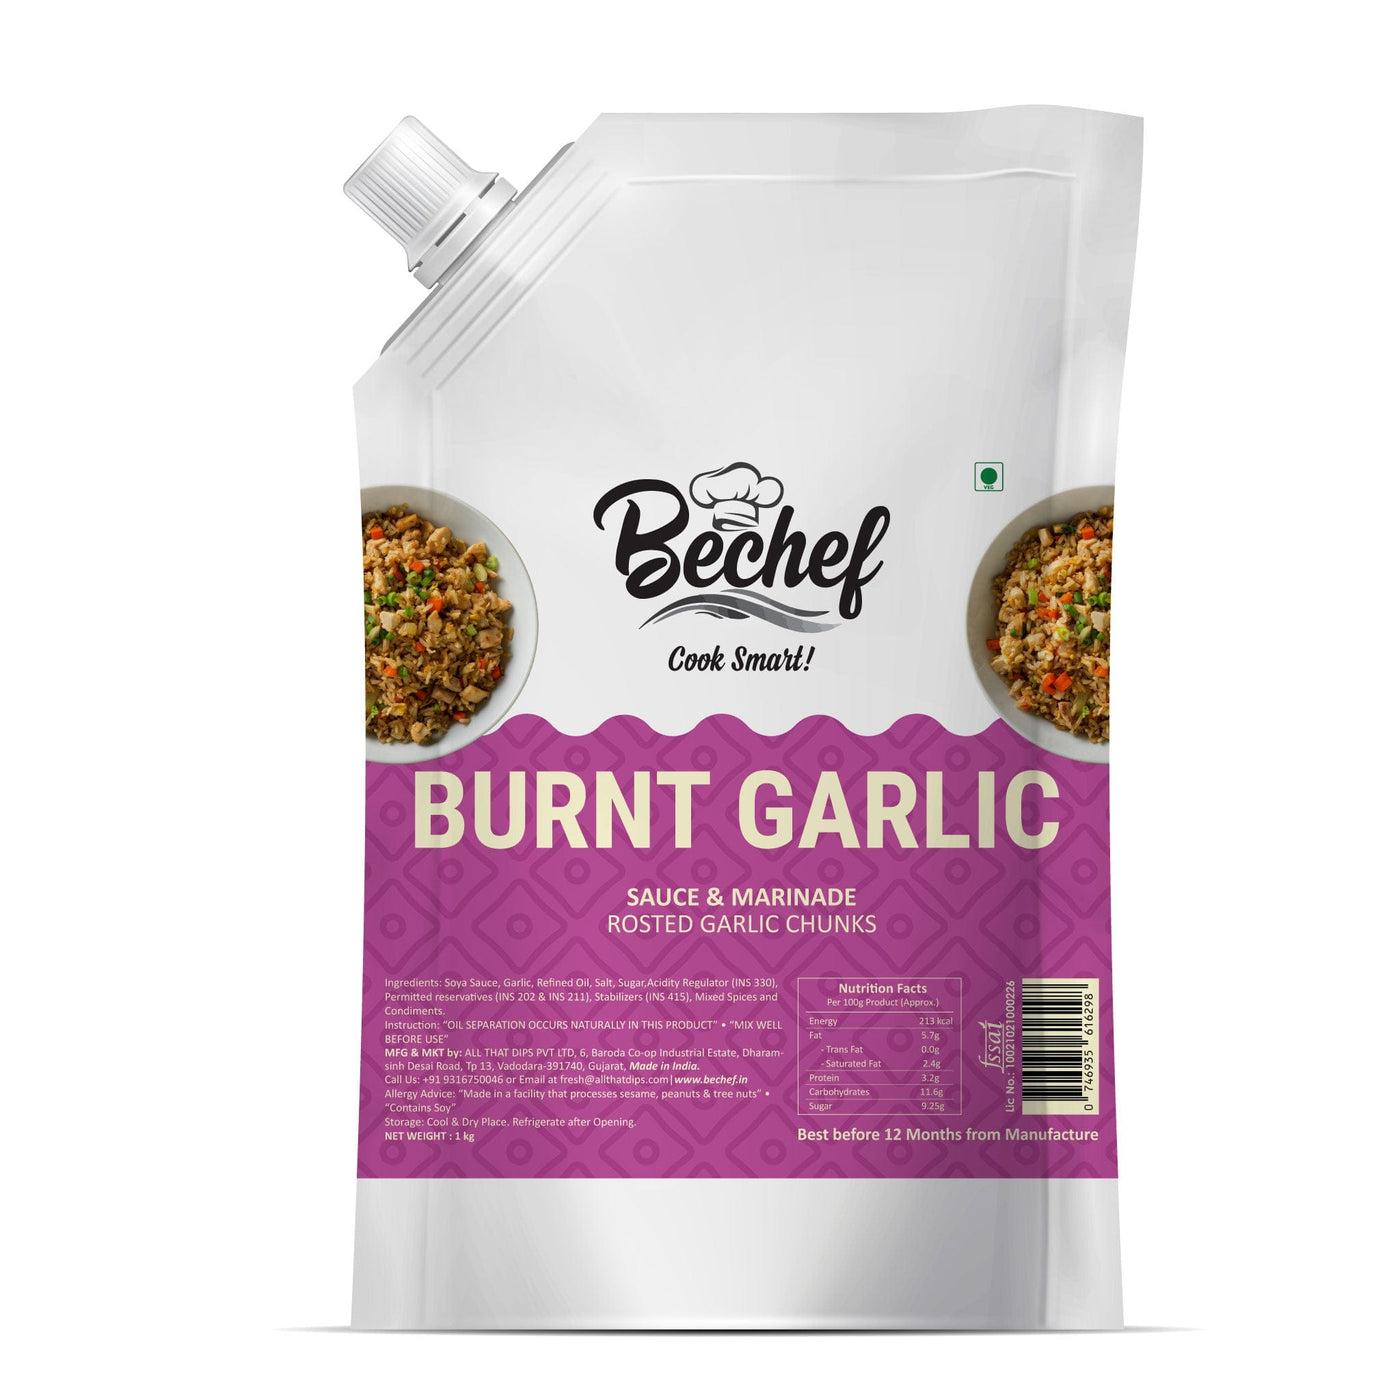 Burnt Garlic sauce : Mongolian Cooking Sauce : 1 KG : Bulk Pack - Bechef - Gourmet Pantry Essentials